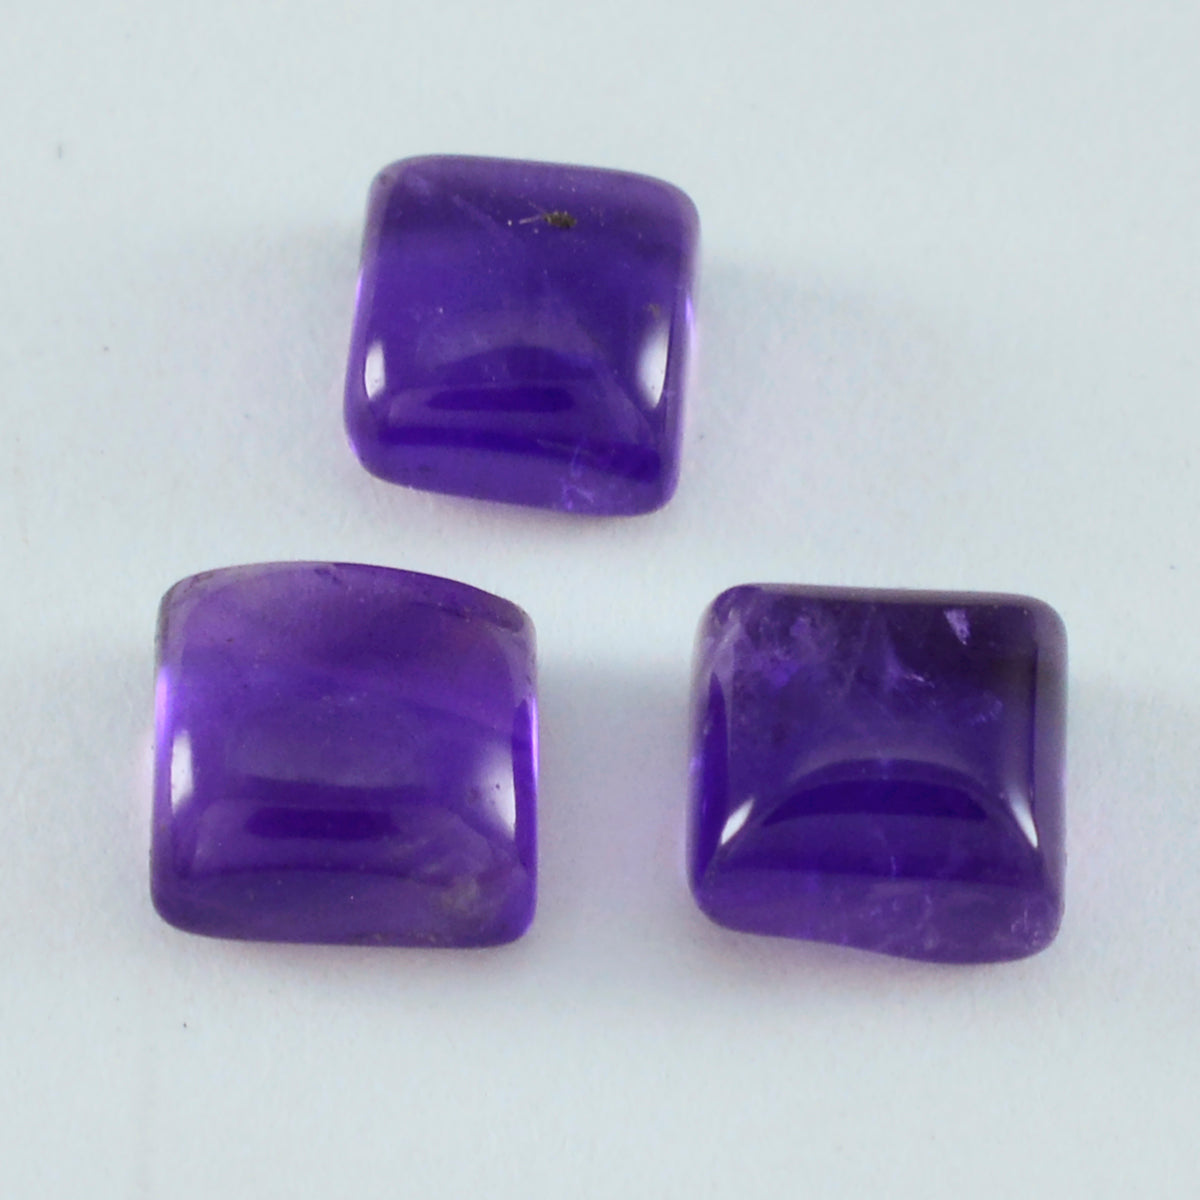 riyogems 1шт фиолетовый аметист кабошон 14x14 мм квадратной формы драгоценные камни удивительного качества